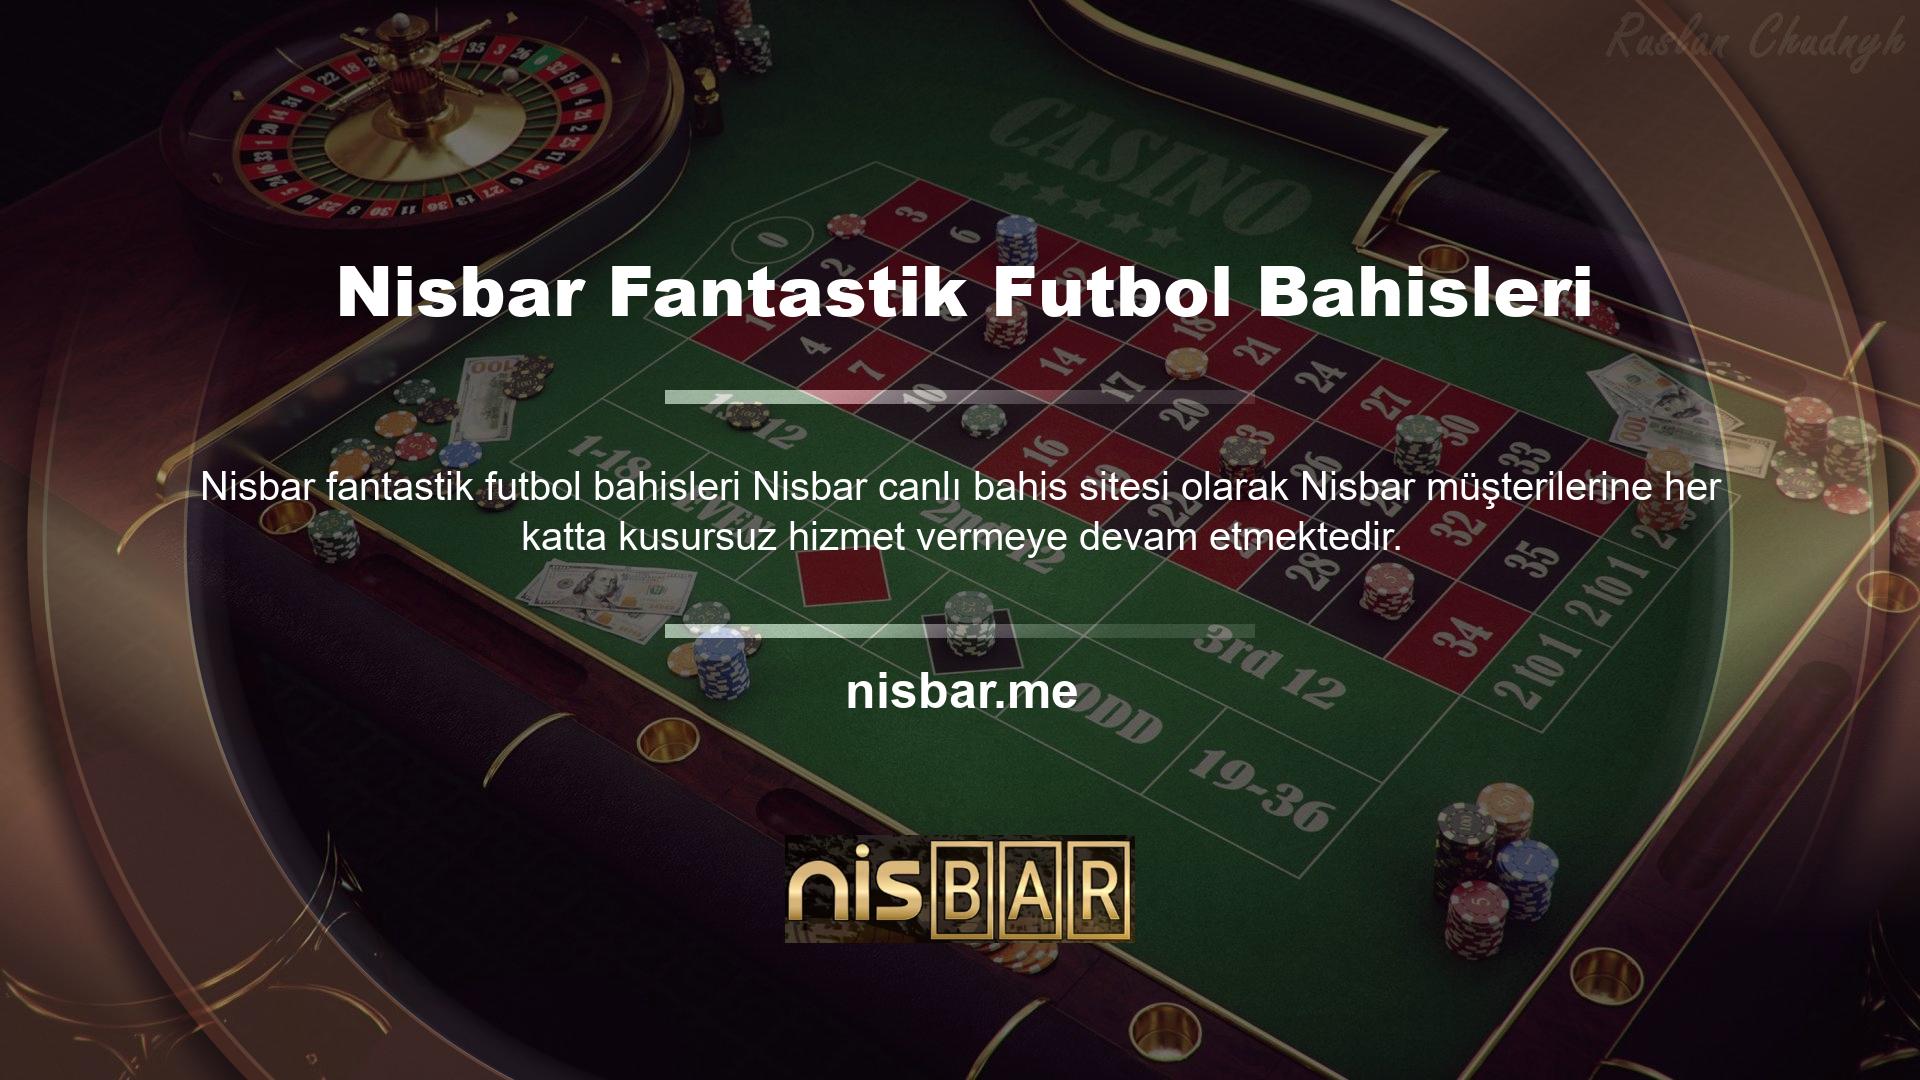 Nisbar Sanal Futbolu, müşterilerin FIFA ve diğer harika oyunlarda futbol bahislerinin heyecanını yaşamalarına olanak tanır